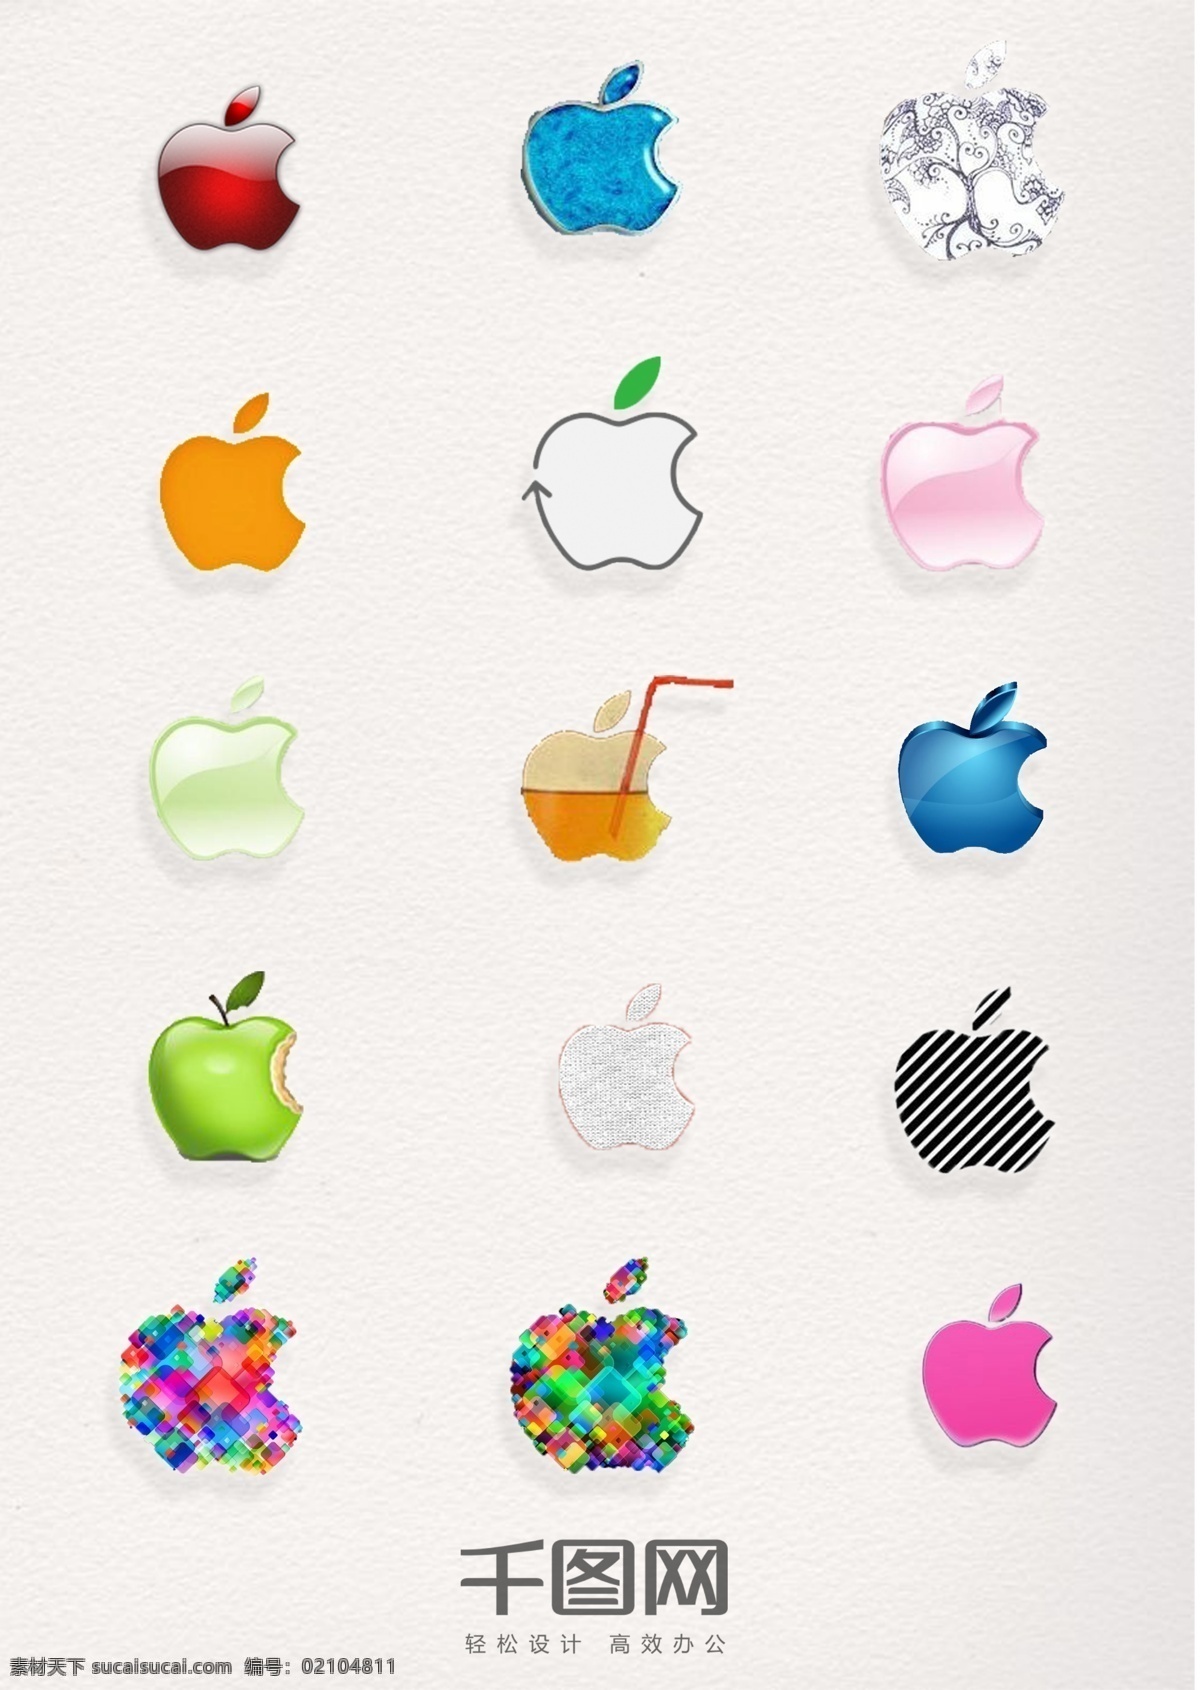 苹果 logo 水晶 条纹 元素 图标 设计元素 扁平化 立体 品牌